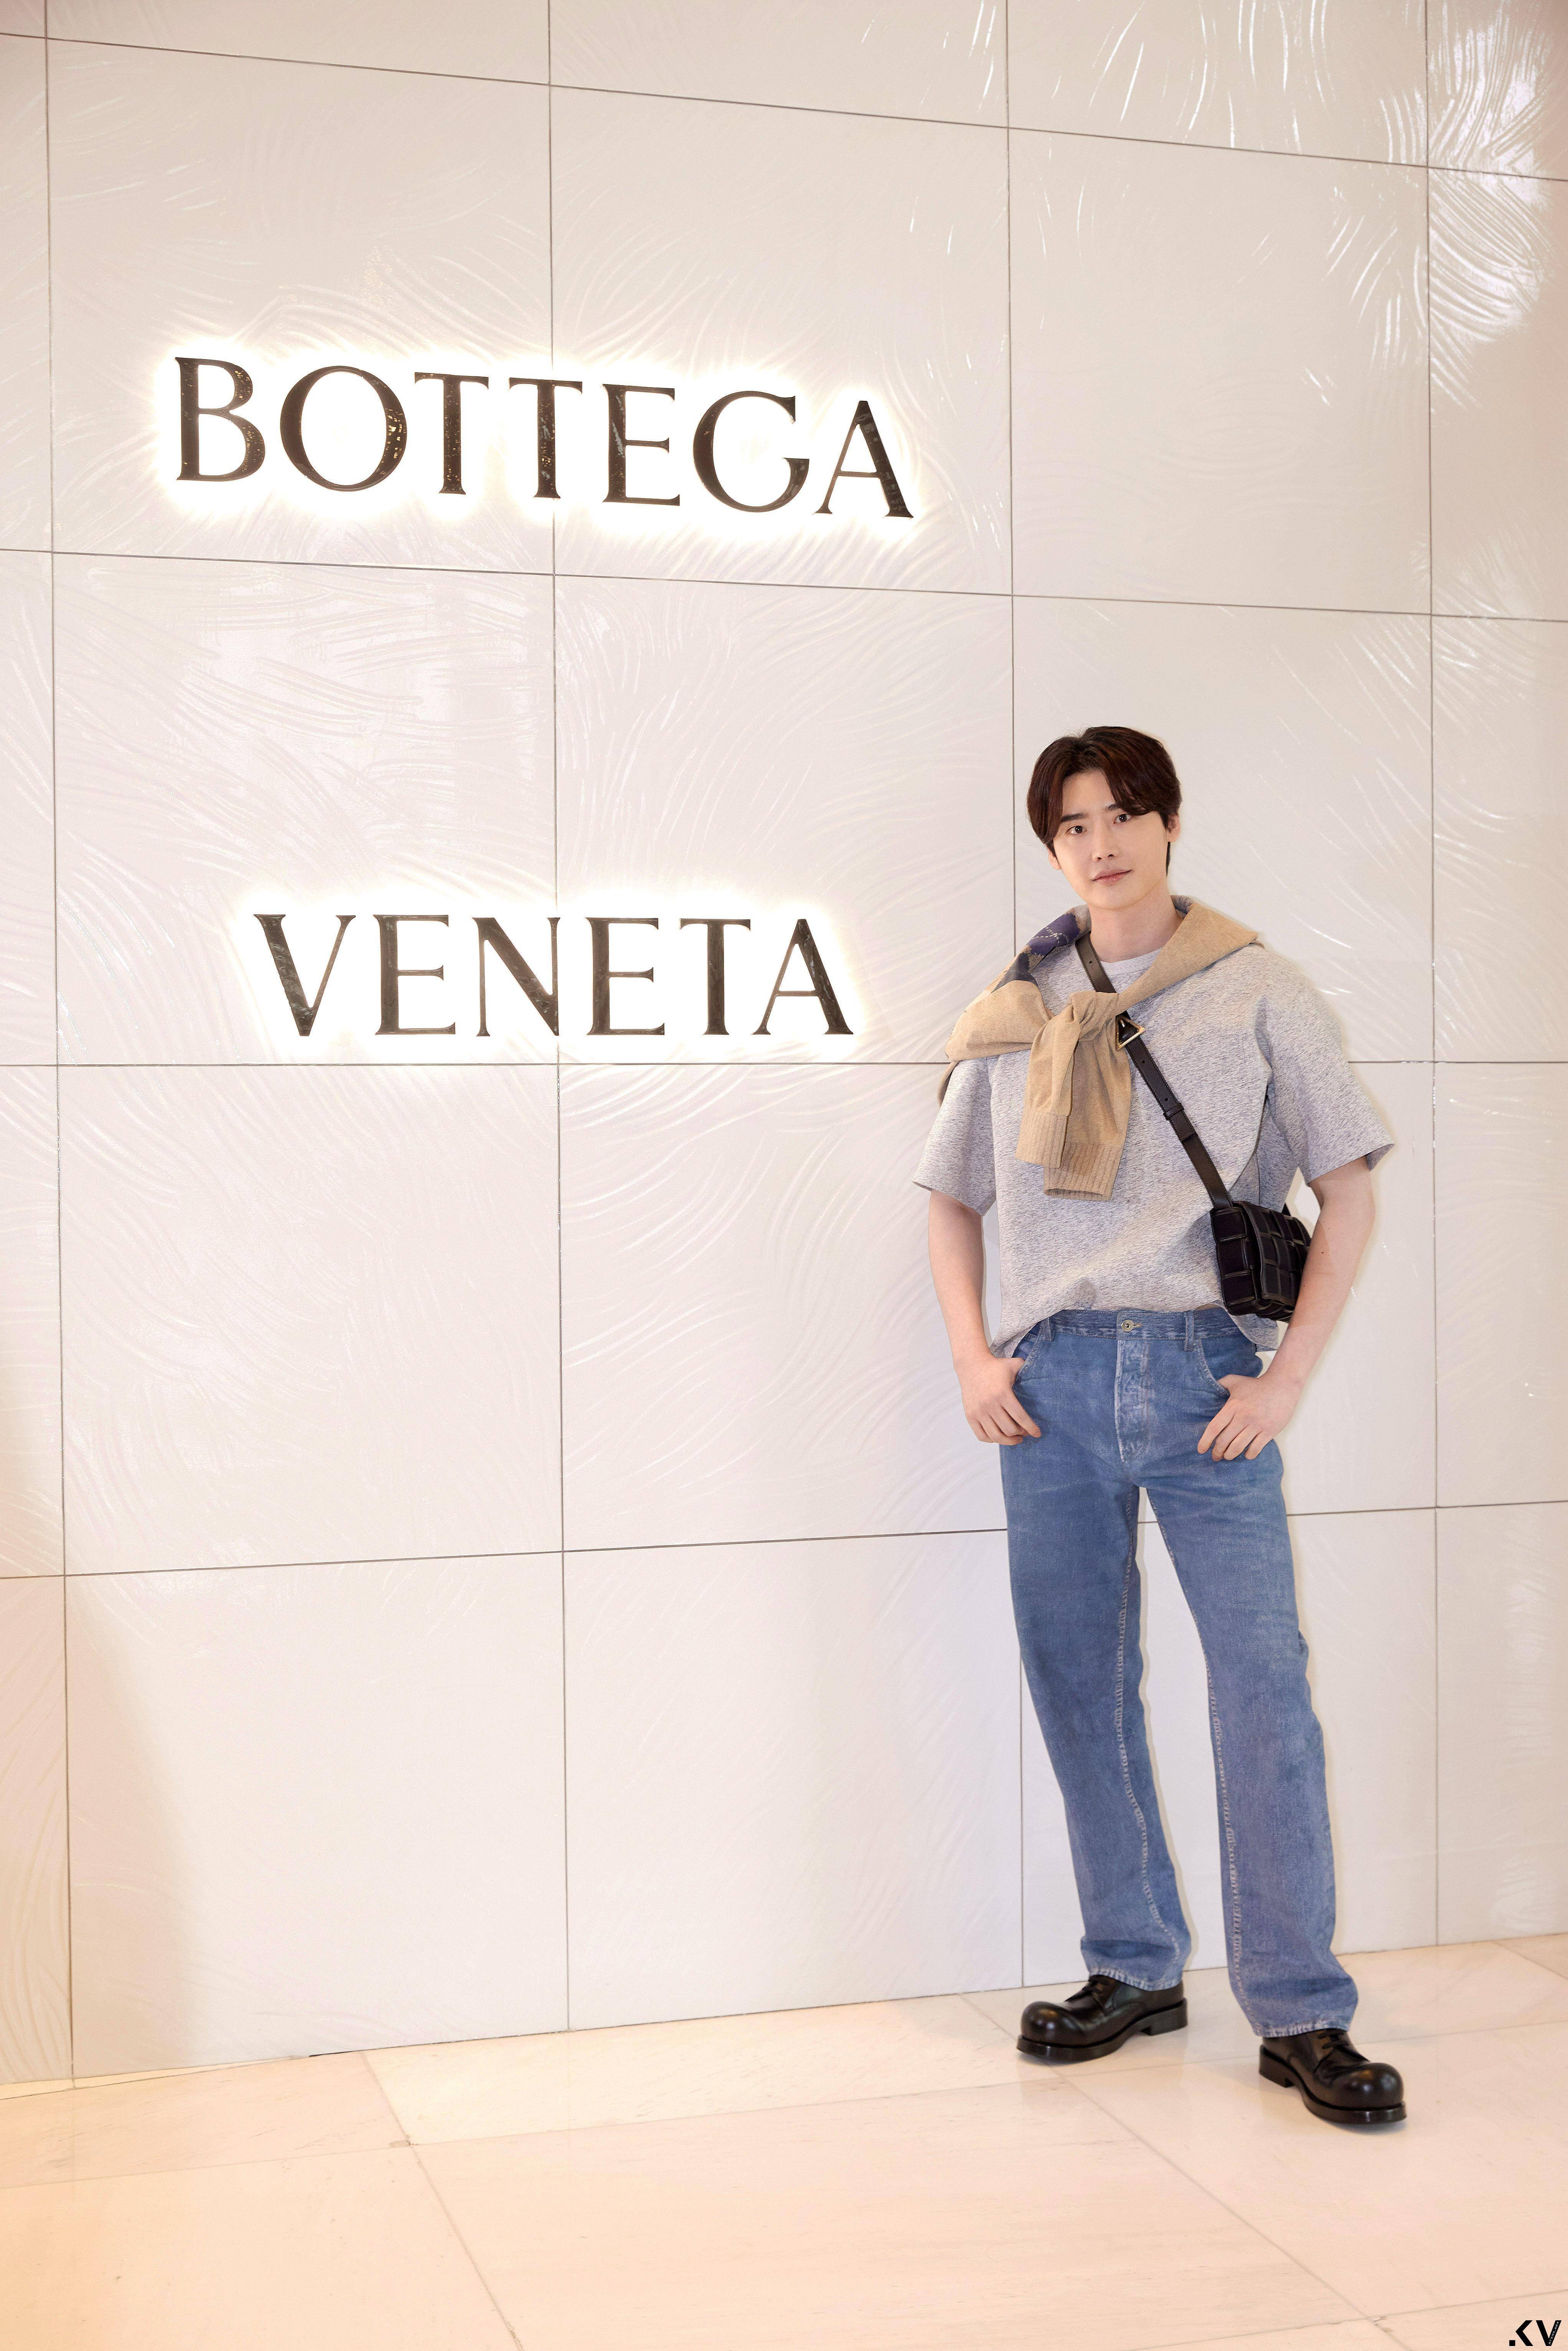 说・流行／小废包没过时！Bottega Veneta糖果包“热卖款全缩小”新色太Q 时尚穿搭 图8张